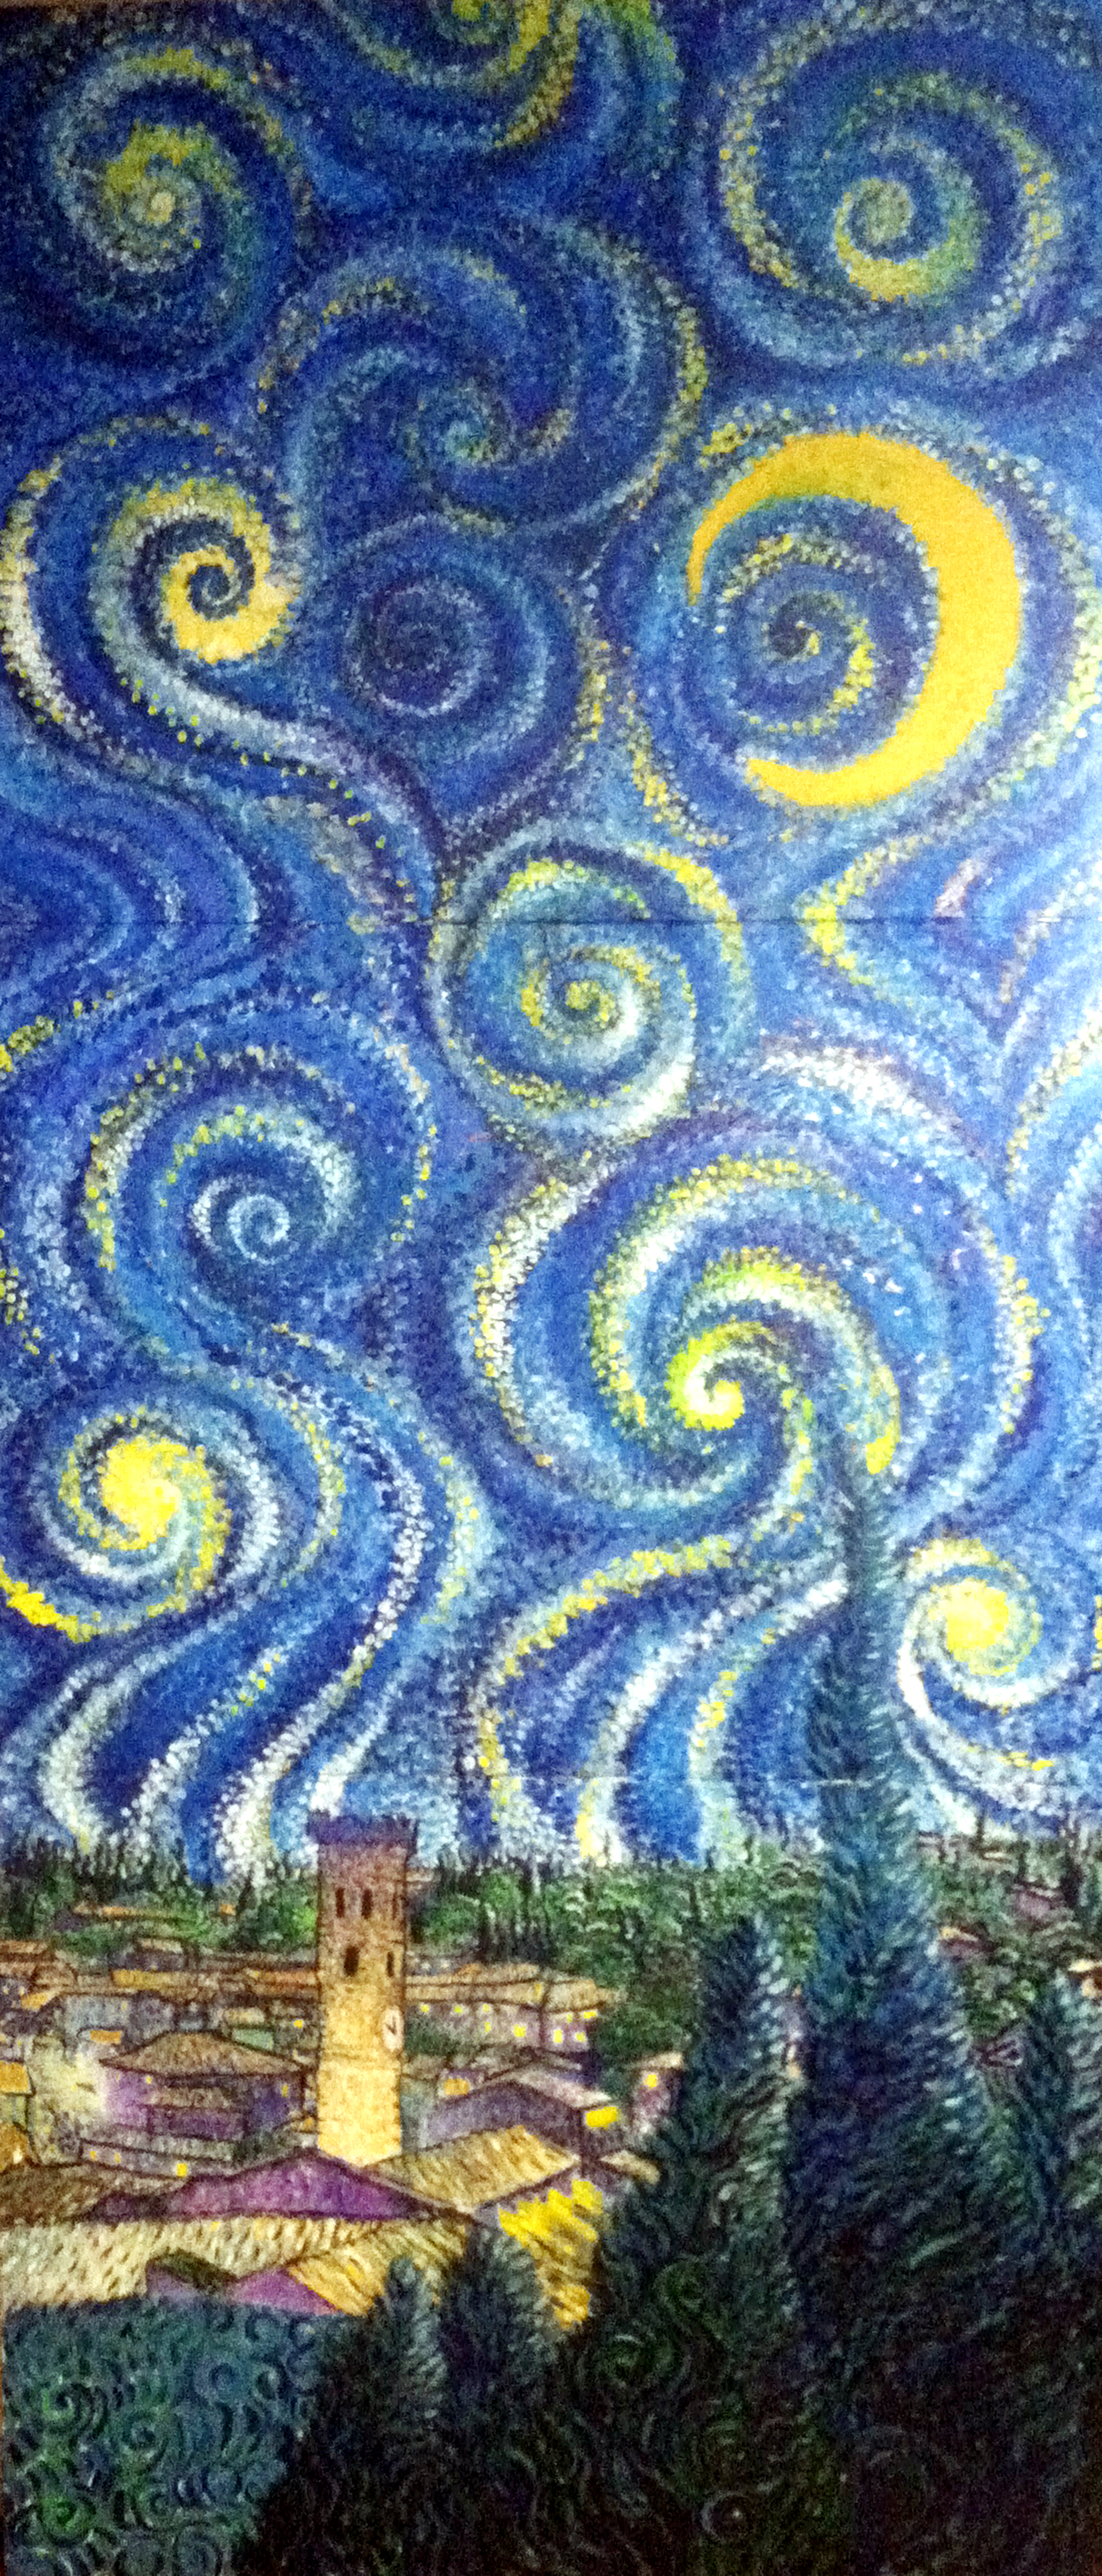 Dream Painting - Vincent van Gogh Fan Art (38665420) - Fanpop